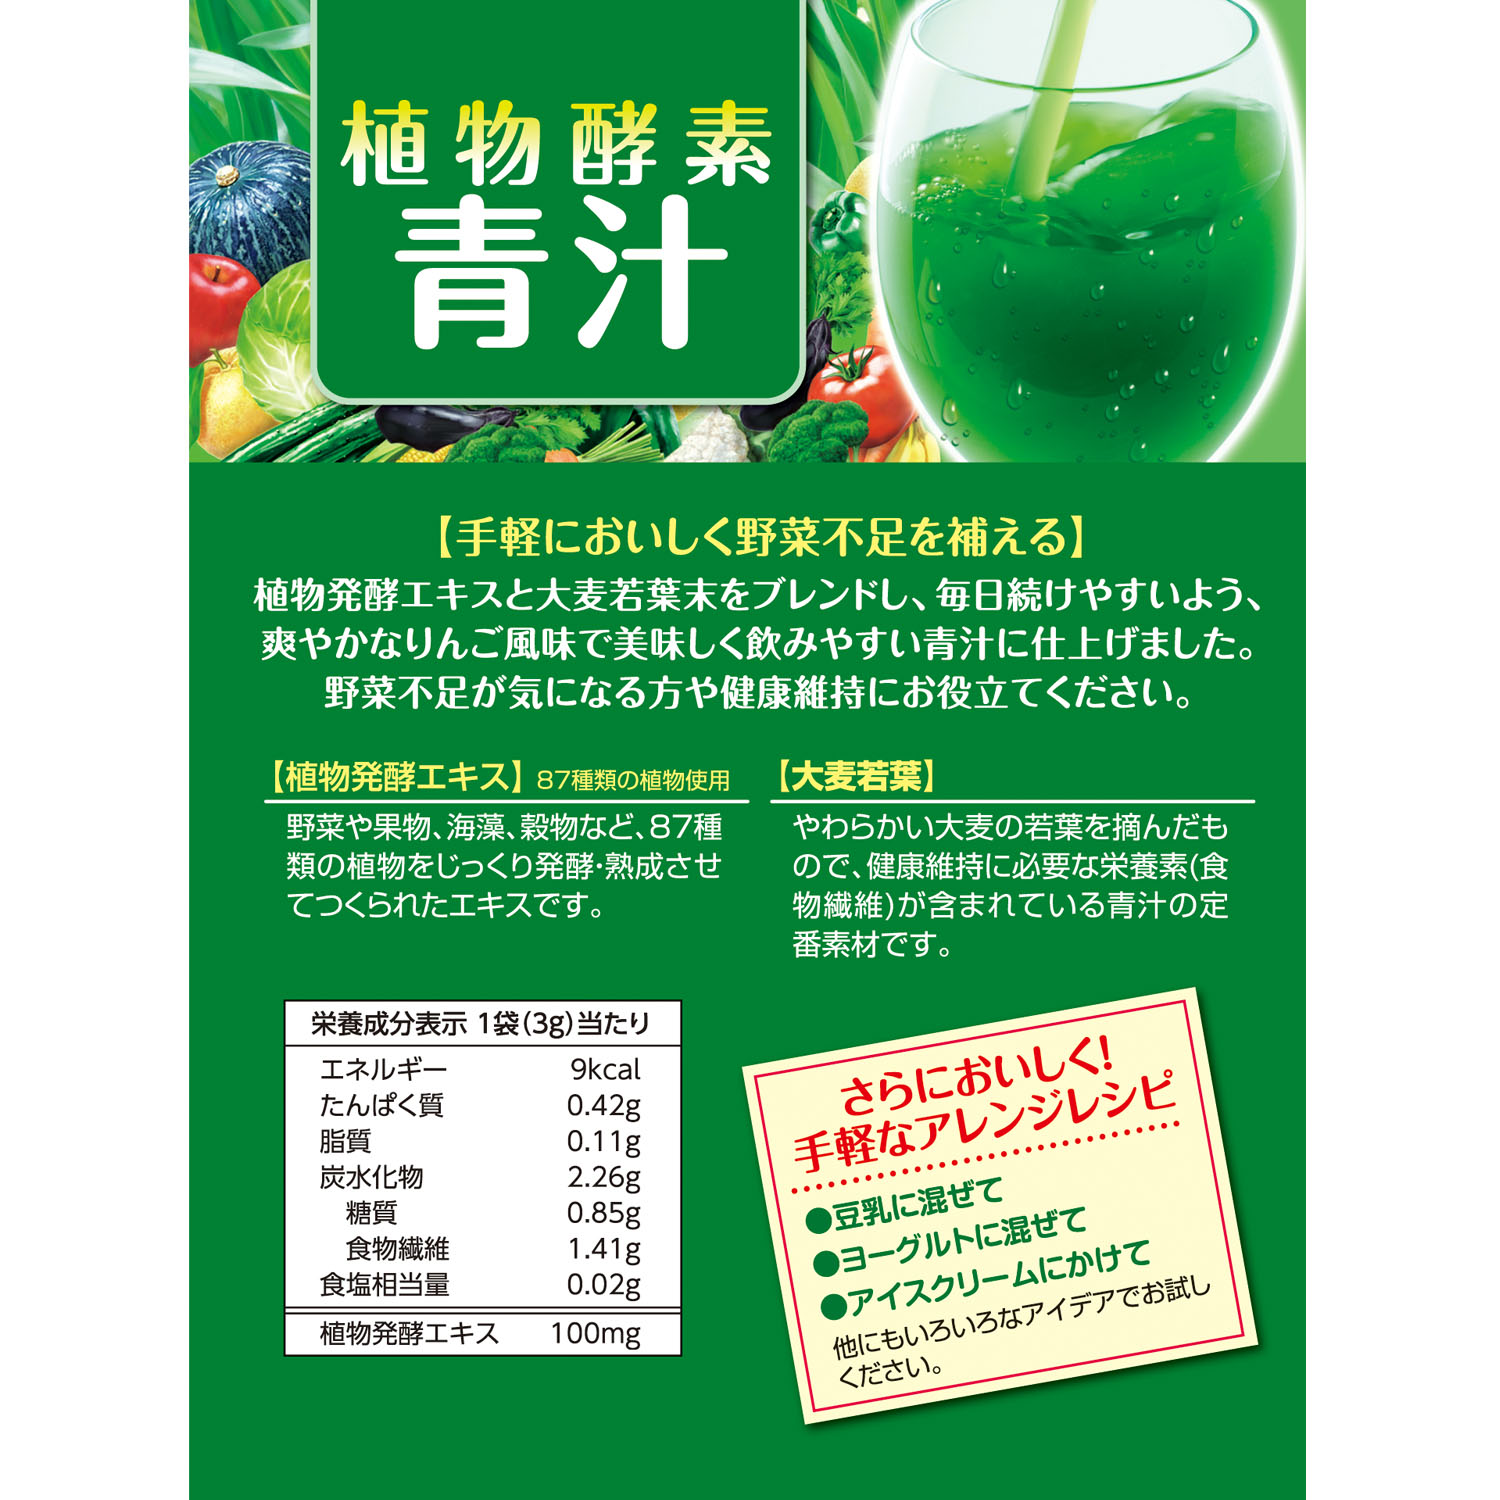 植物酵素青汁 | 健康食品のことなら井藤漢方製薬